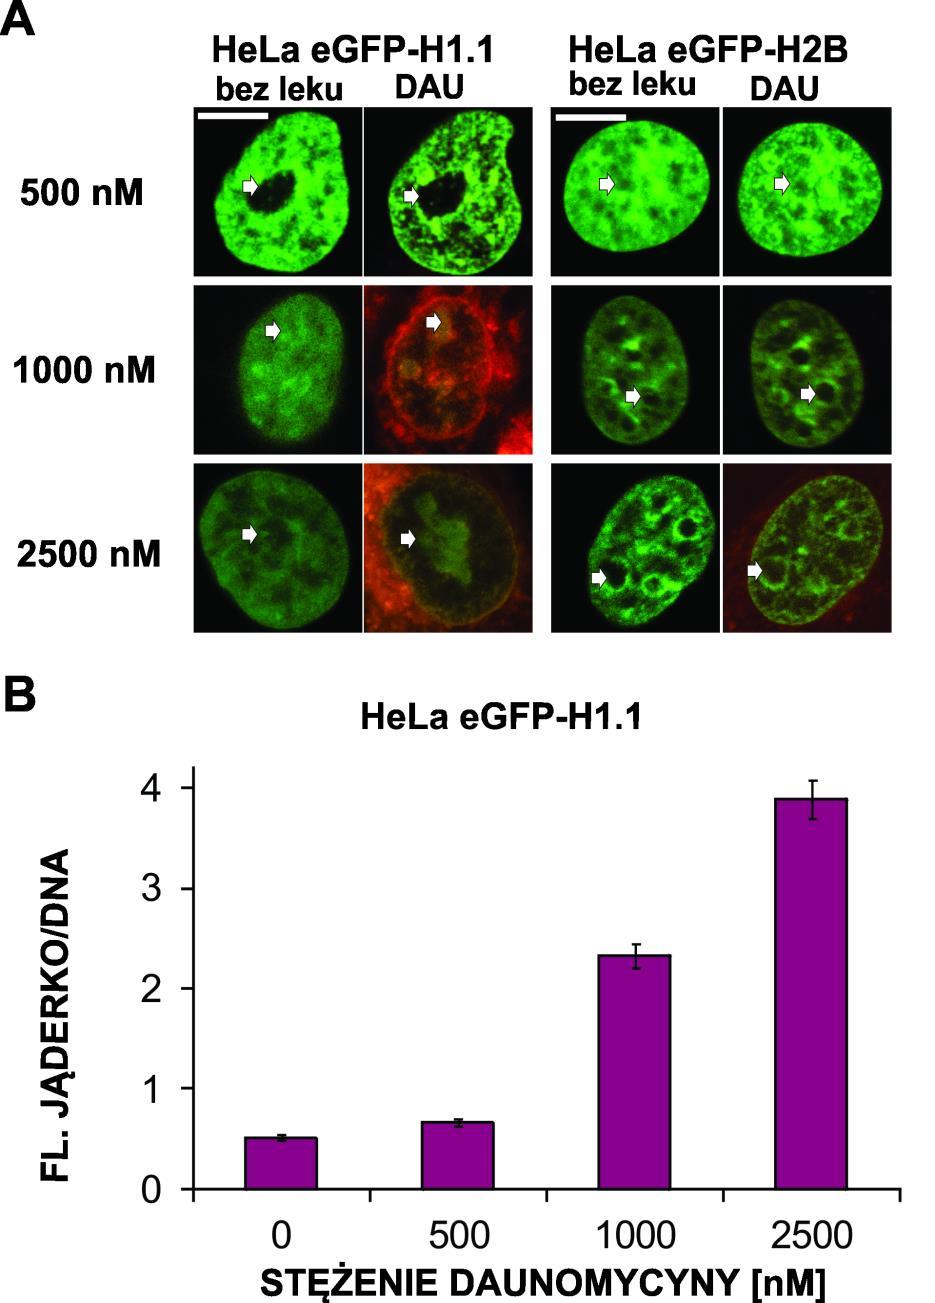 Rys. 5.3. Wpływ daunomycyny na rozkład przestrzenny histonów H1.1 i H2B wyznakowanych egfp w żywych komórkach. Żywe komórki HeLa z histonami H1.